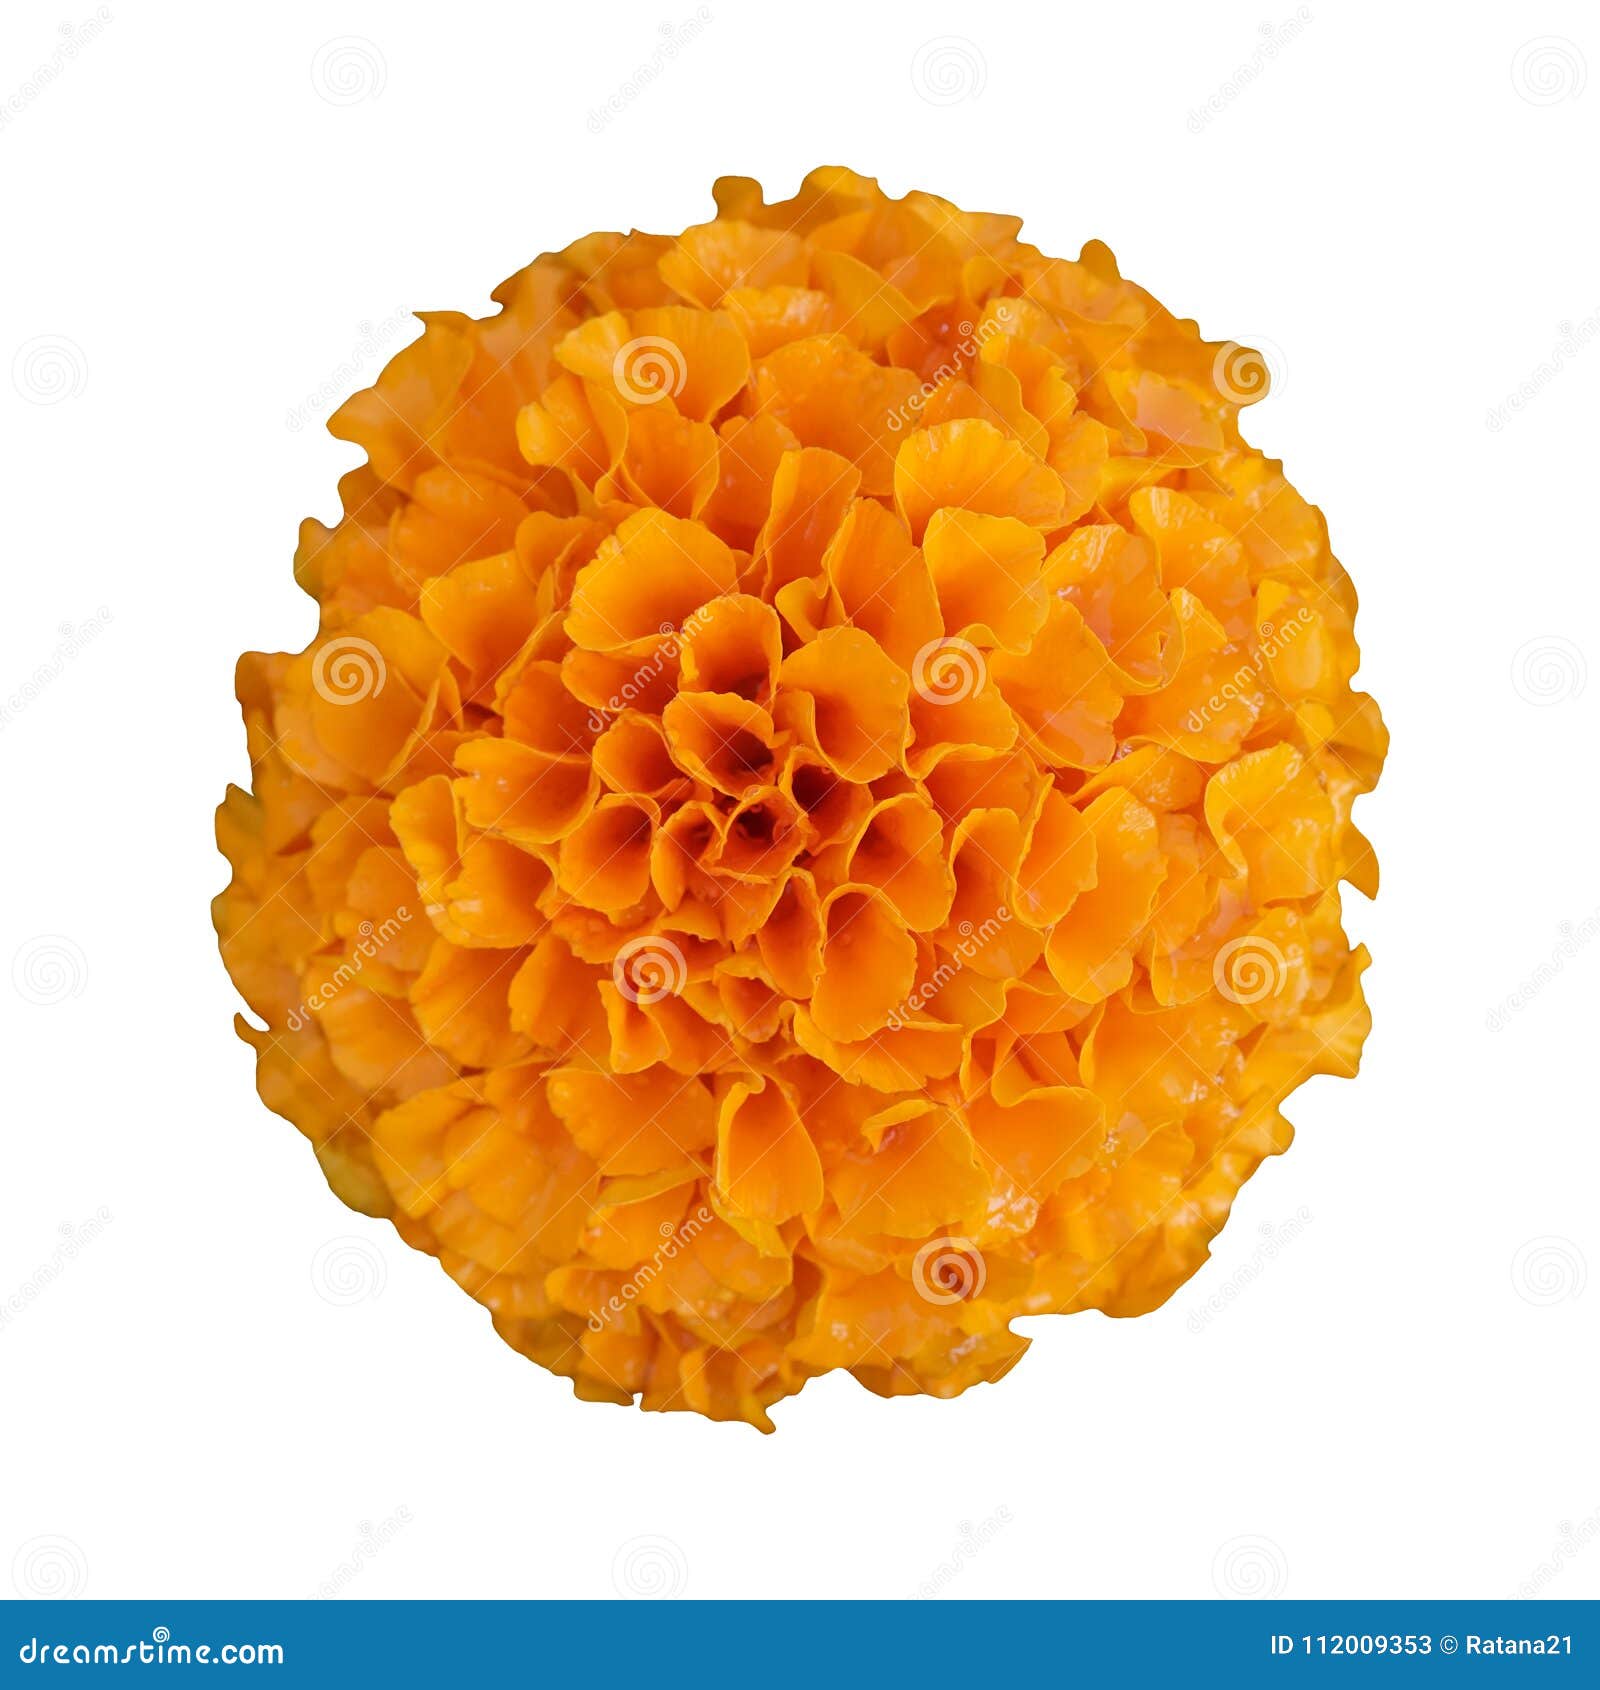 Beautiful Orange Marigold Flower Isolated on White Background Stock ...